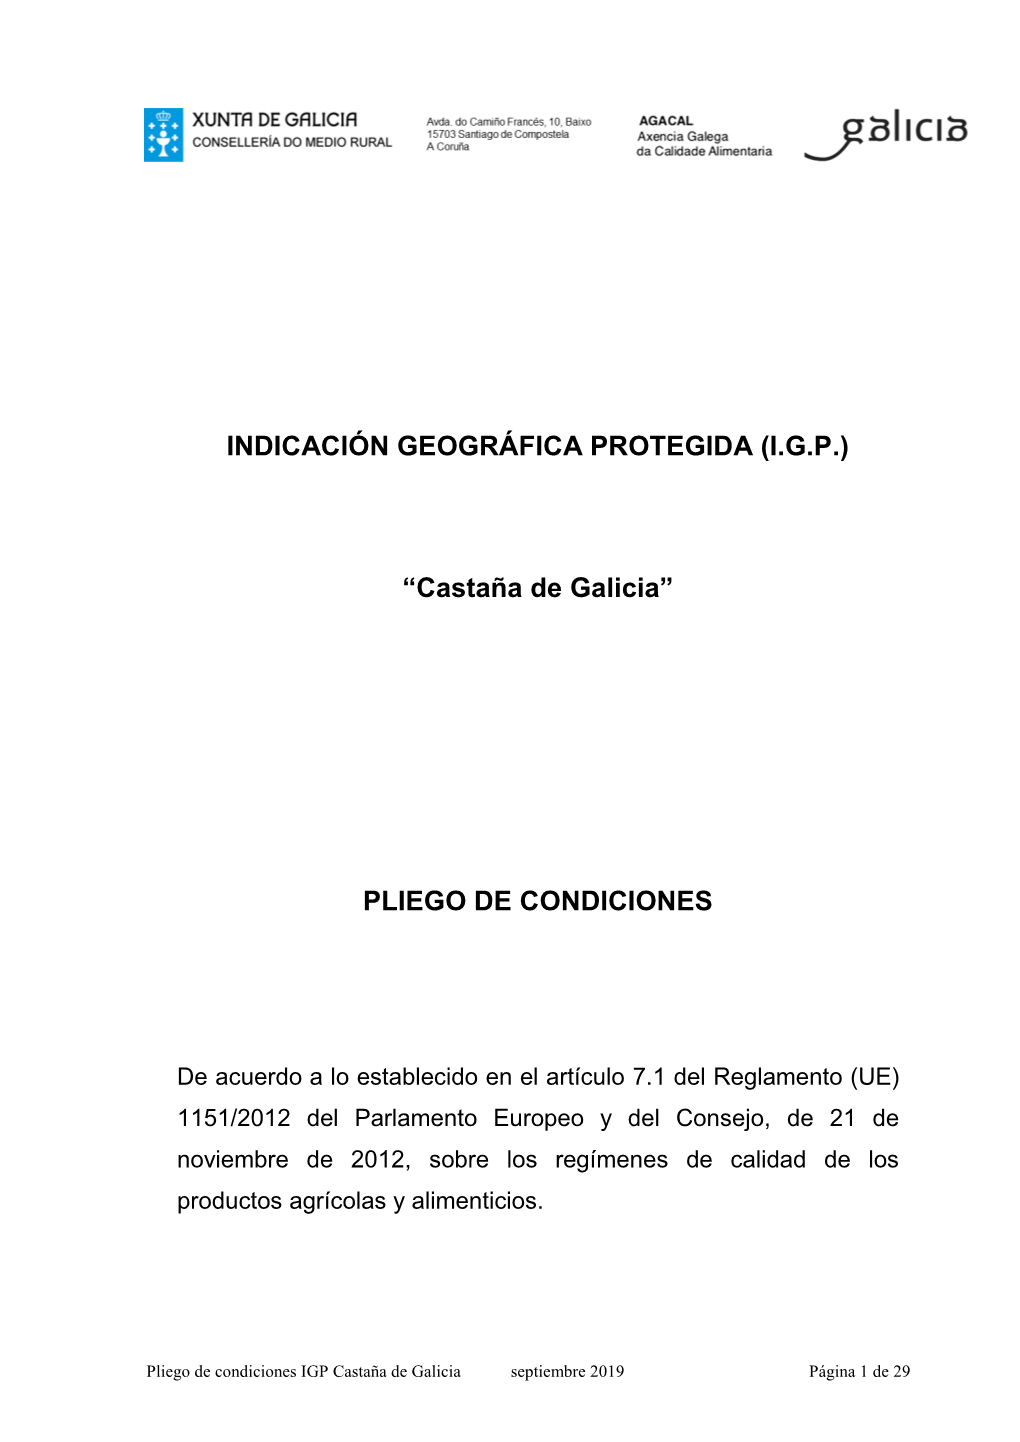 (IGP) “Castaña De Galicia” PLIEGO DE CONDICIONES